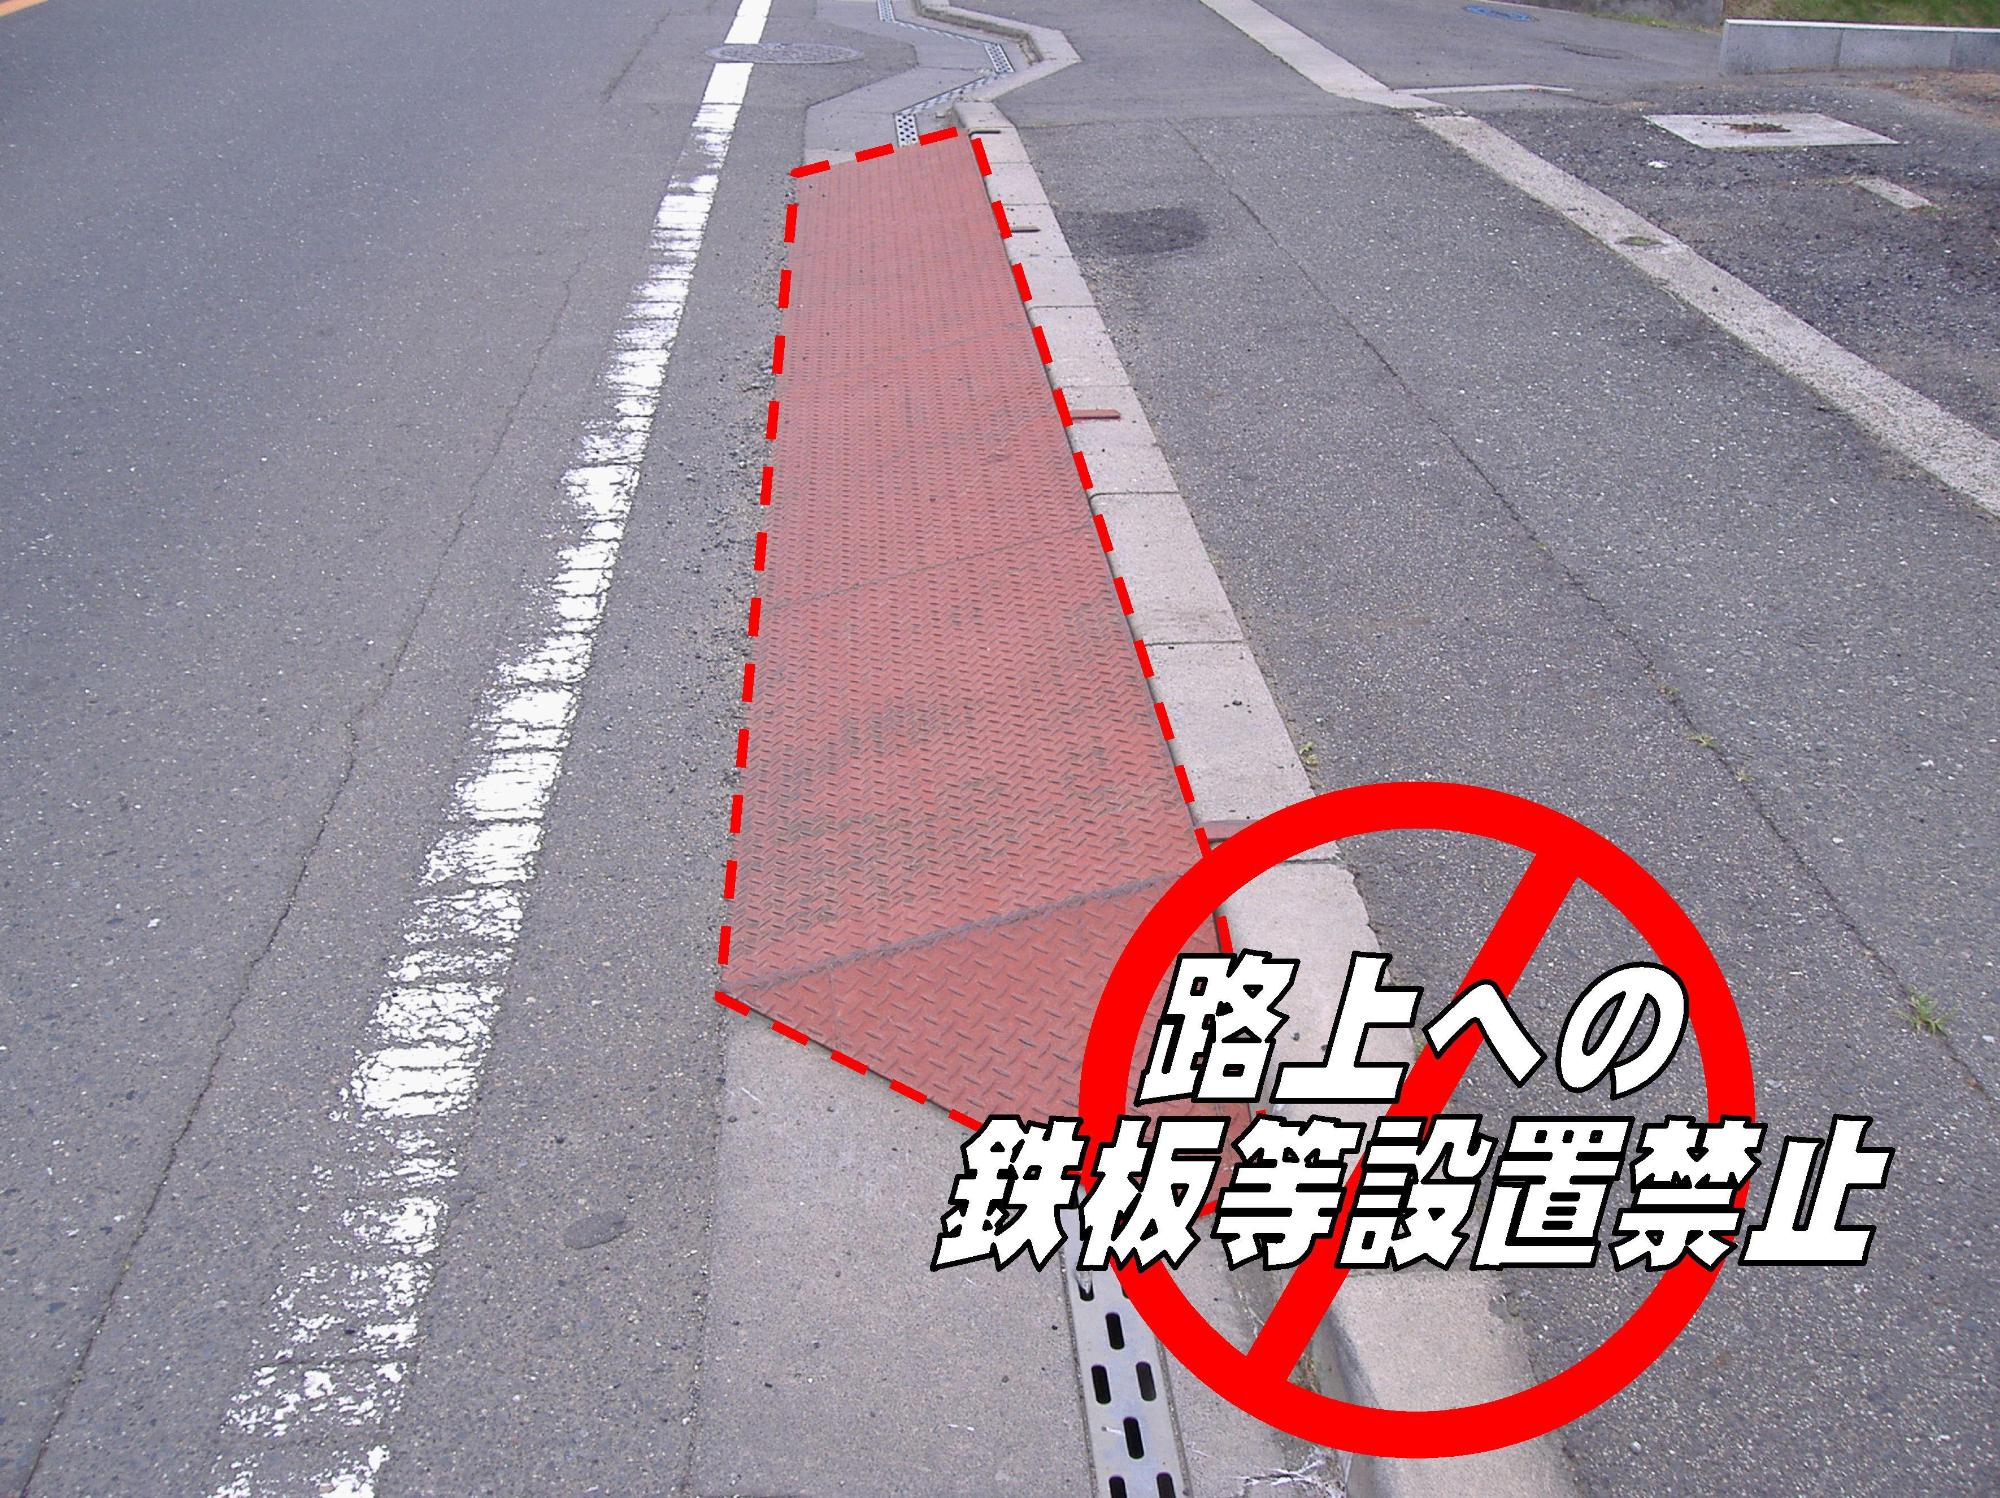 道路の写真に「路上への鉄板等設置禁止」の文字と、禁止場所が赤く囲まれた画像